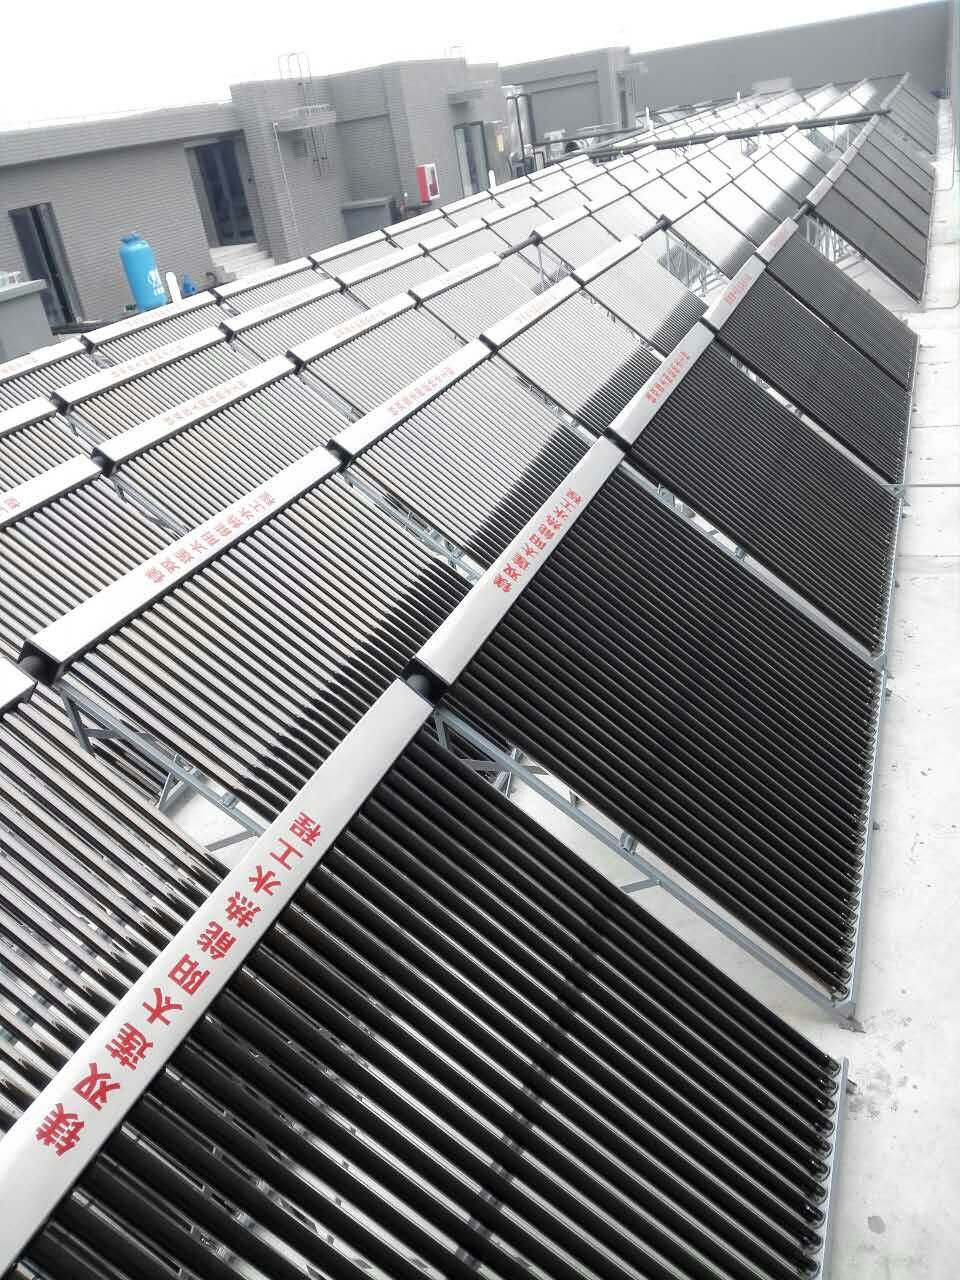 医院太阳能热水工程――祝镁双莲公司上海松江社区医院太阳能热水器工程完工